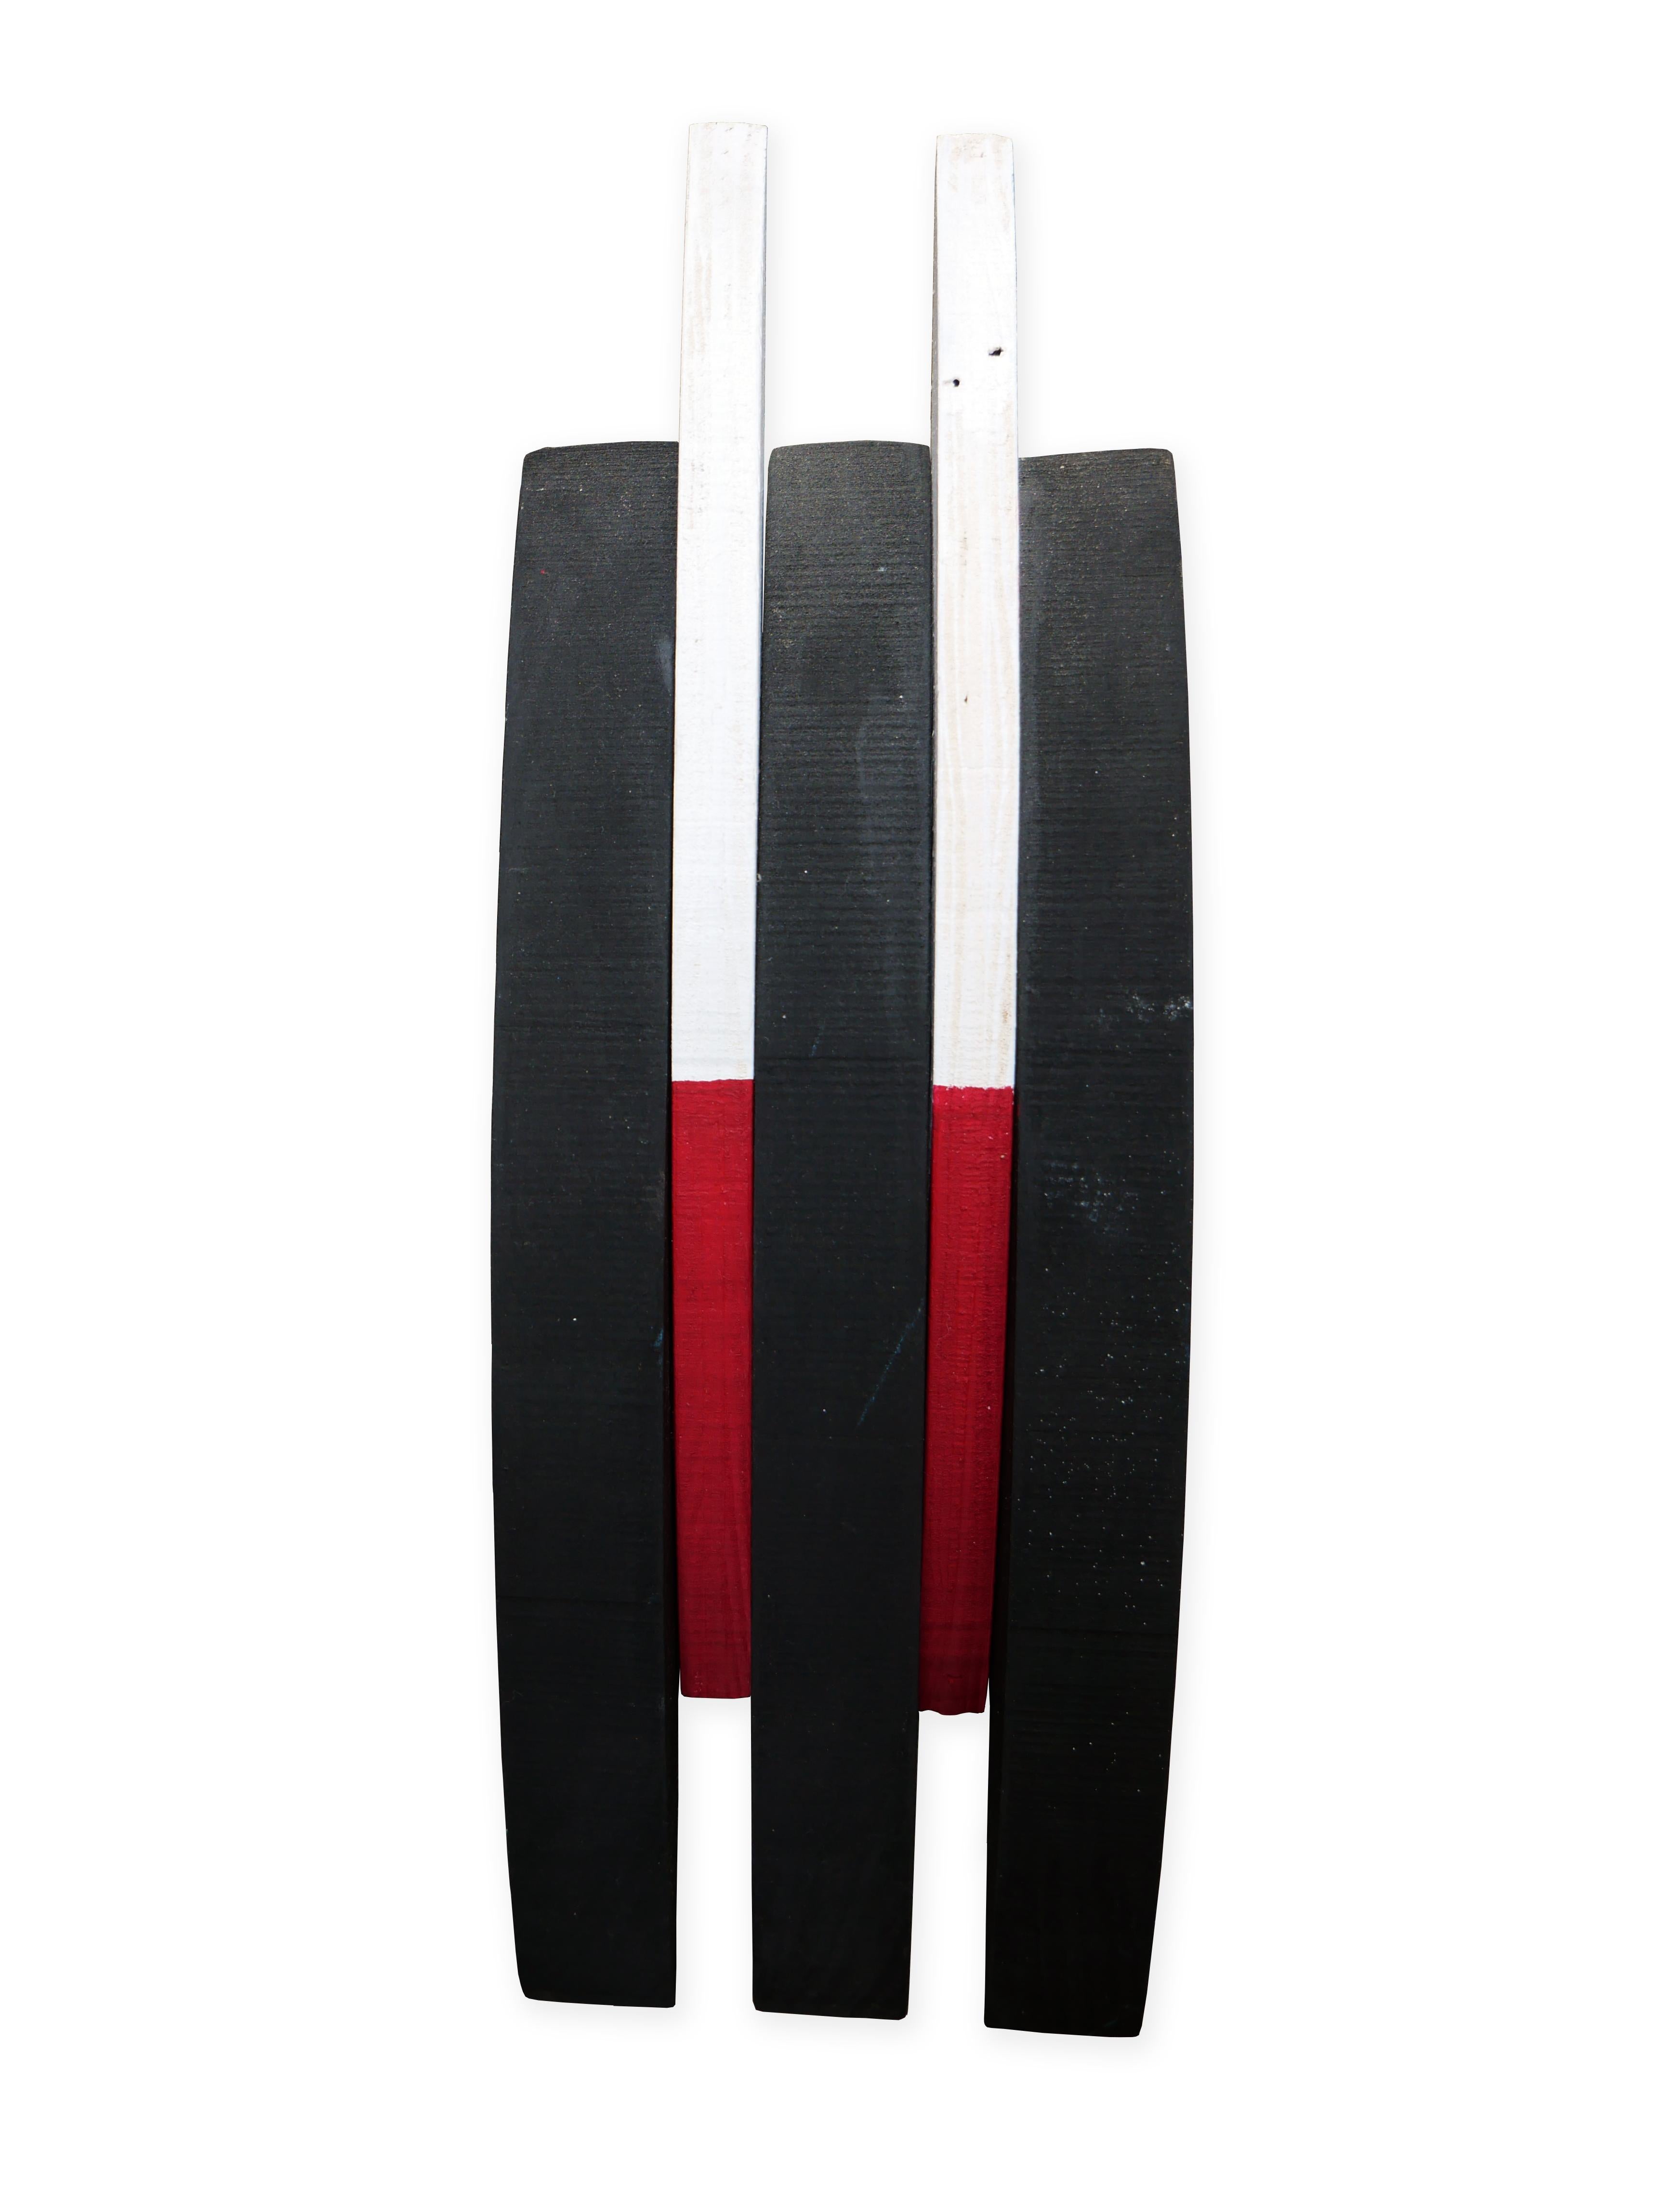 Minimal 5 Sculpture en bois abstraite géométrique rouge, blanche et noire